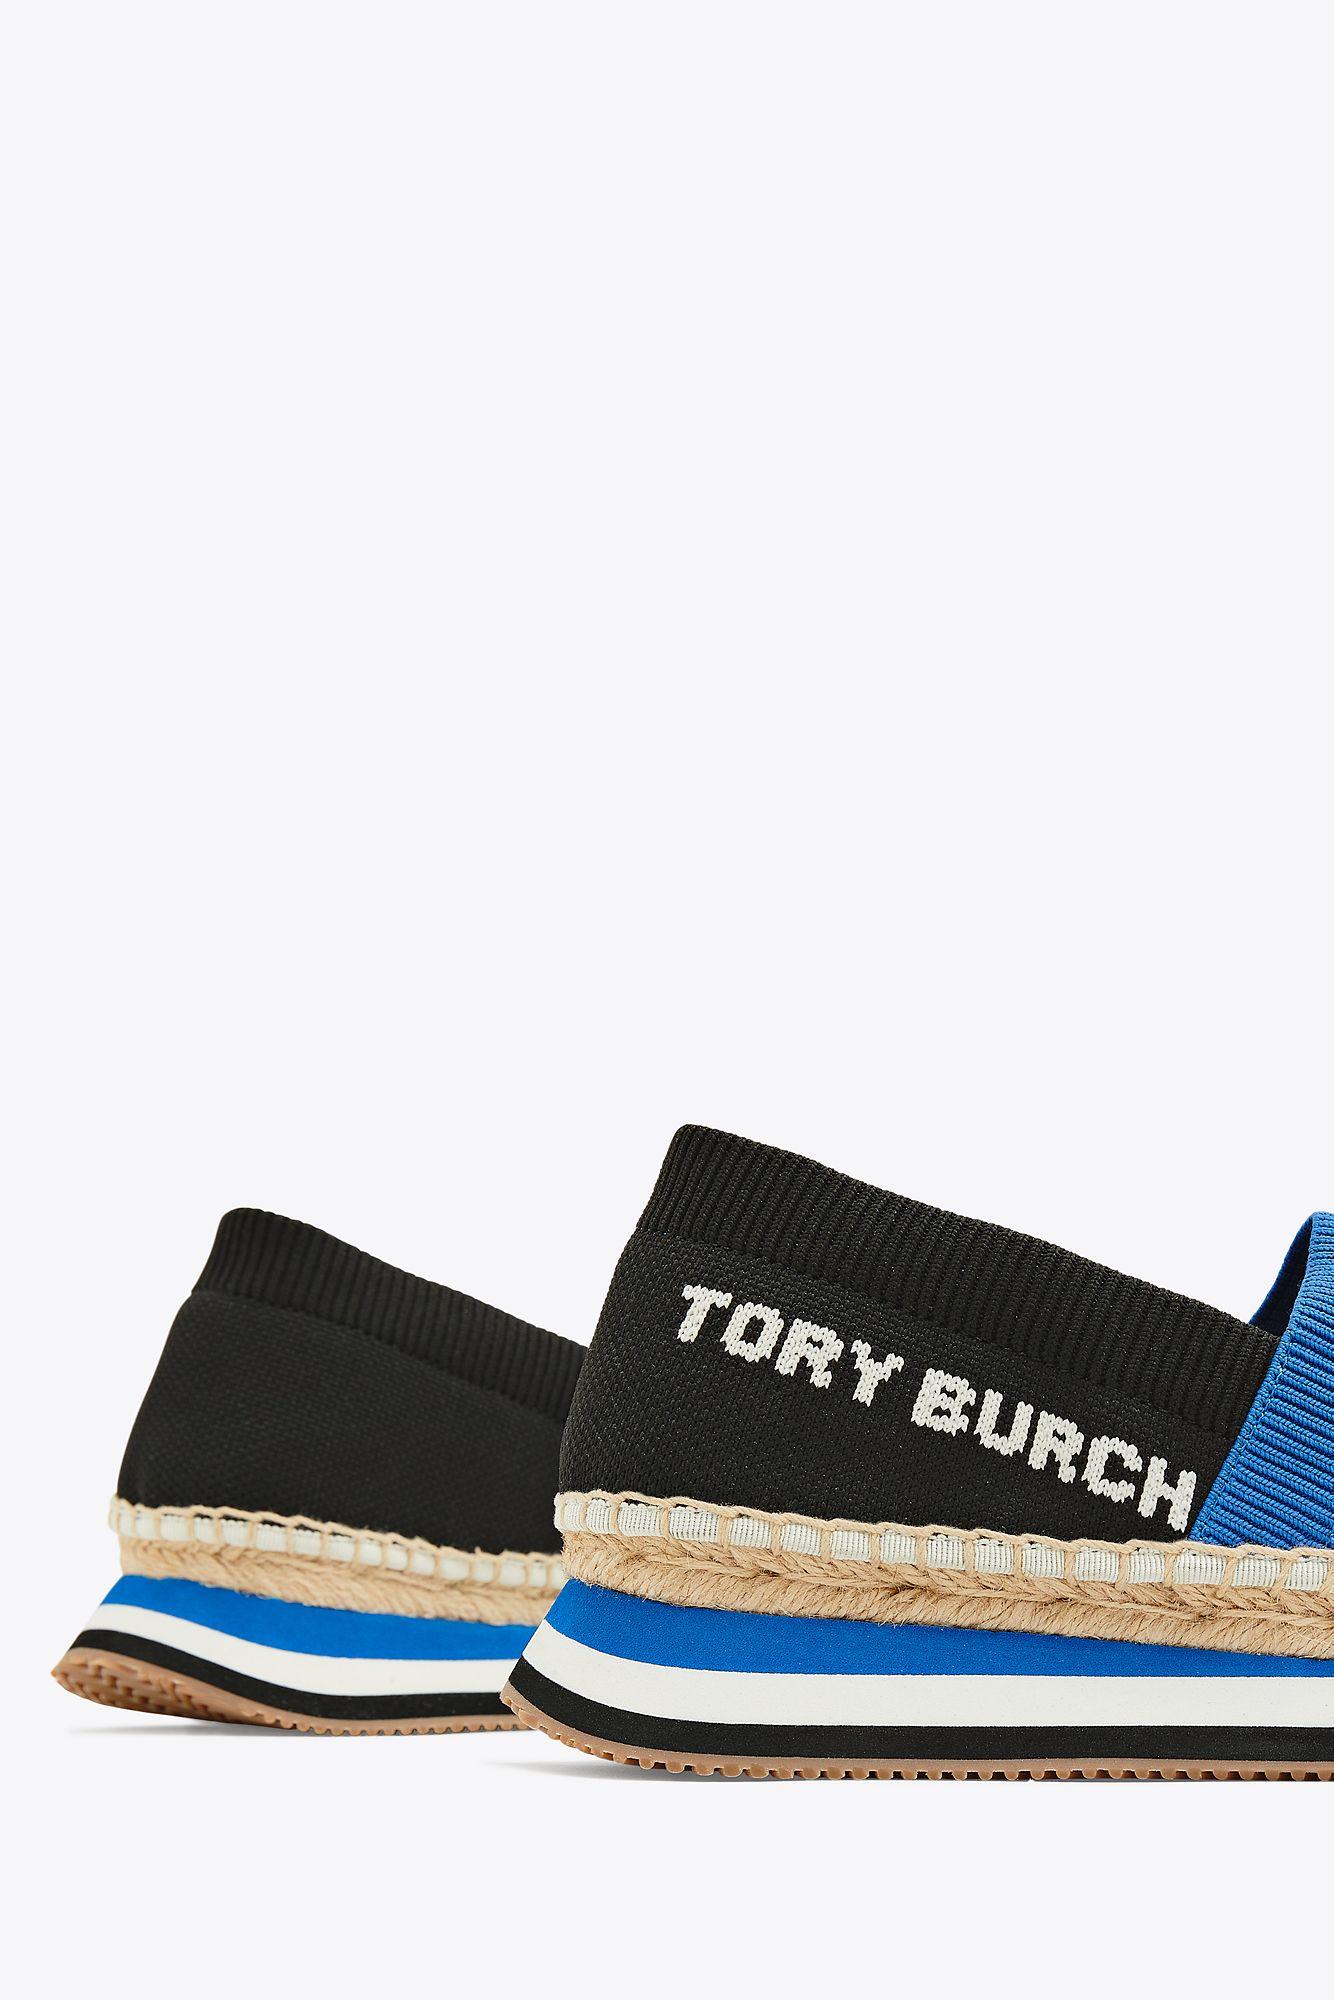 Tory Burch Daisy Slip-on Sneakers in Blue | Lyst